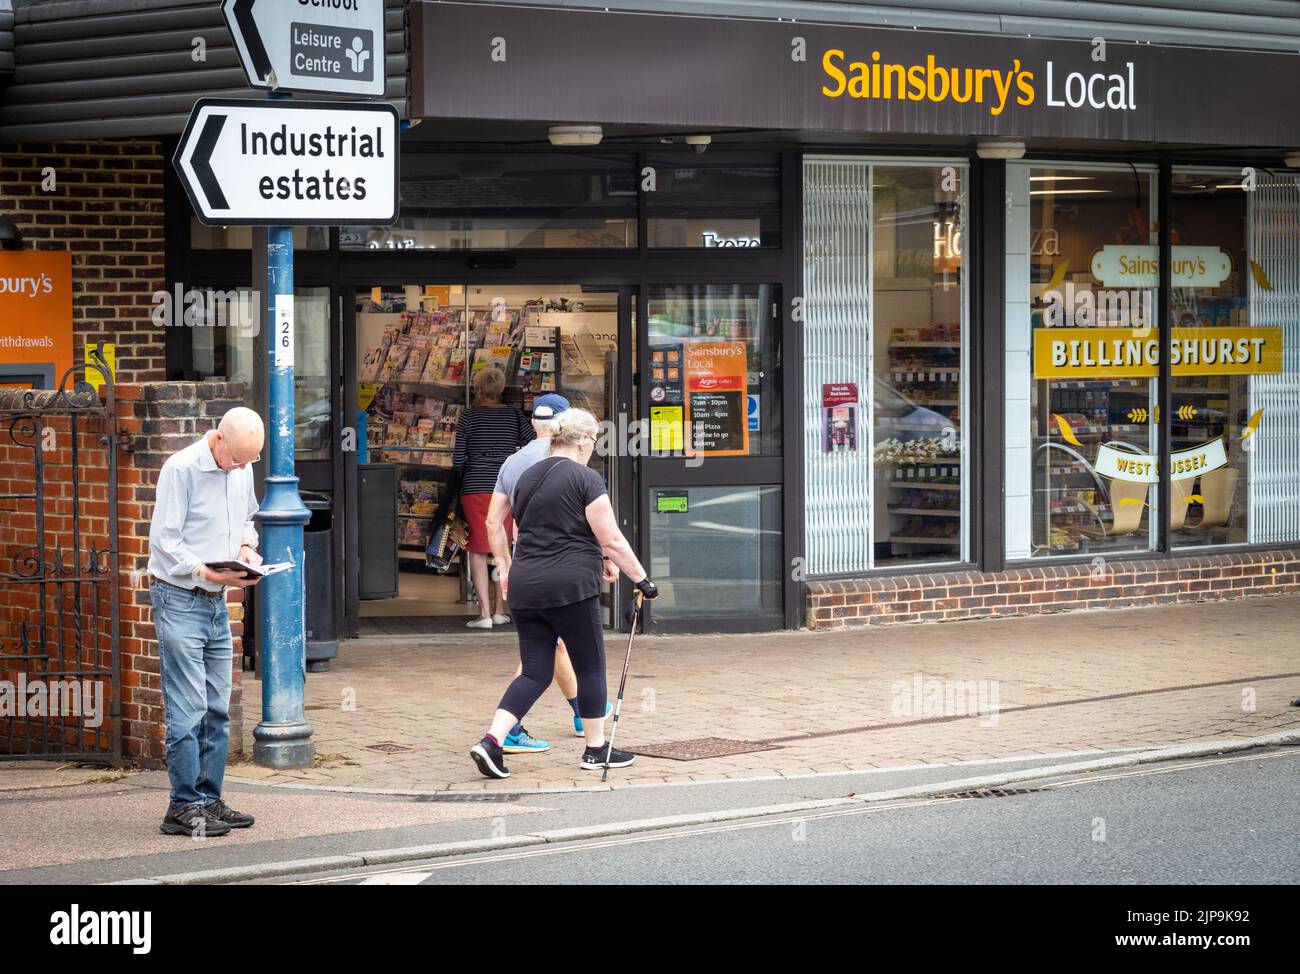 Billingshurst, West Sussex, Großbritannien, 16. August 2022. Eine Frau, die mit einem Gehstock und mit Mobilitätsprobleme unterwegs ist, geht an einem Sainsbury's Supermarkt in Billingshurst, West Sussex, Großbritannien, vorbei. In einem Bericht, der heute vom britischen Superstore veröffentlicht wurde, wurde festgestellt, dass Sainsbury's der am meisten beklagte Supermarkt in Großbritannien für behinderte Käufer ist. Stockfoto